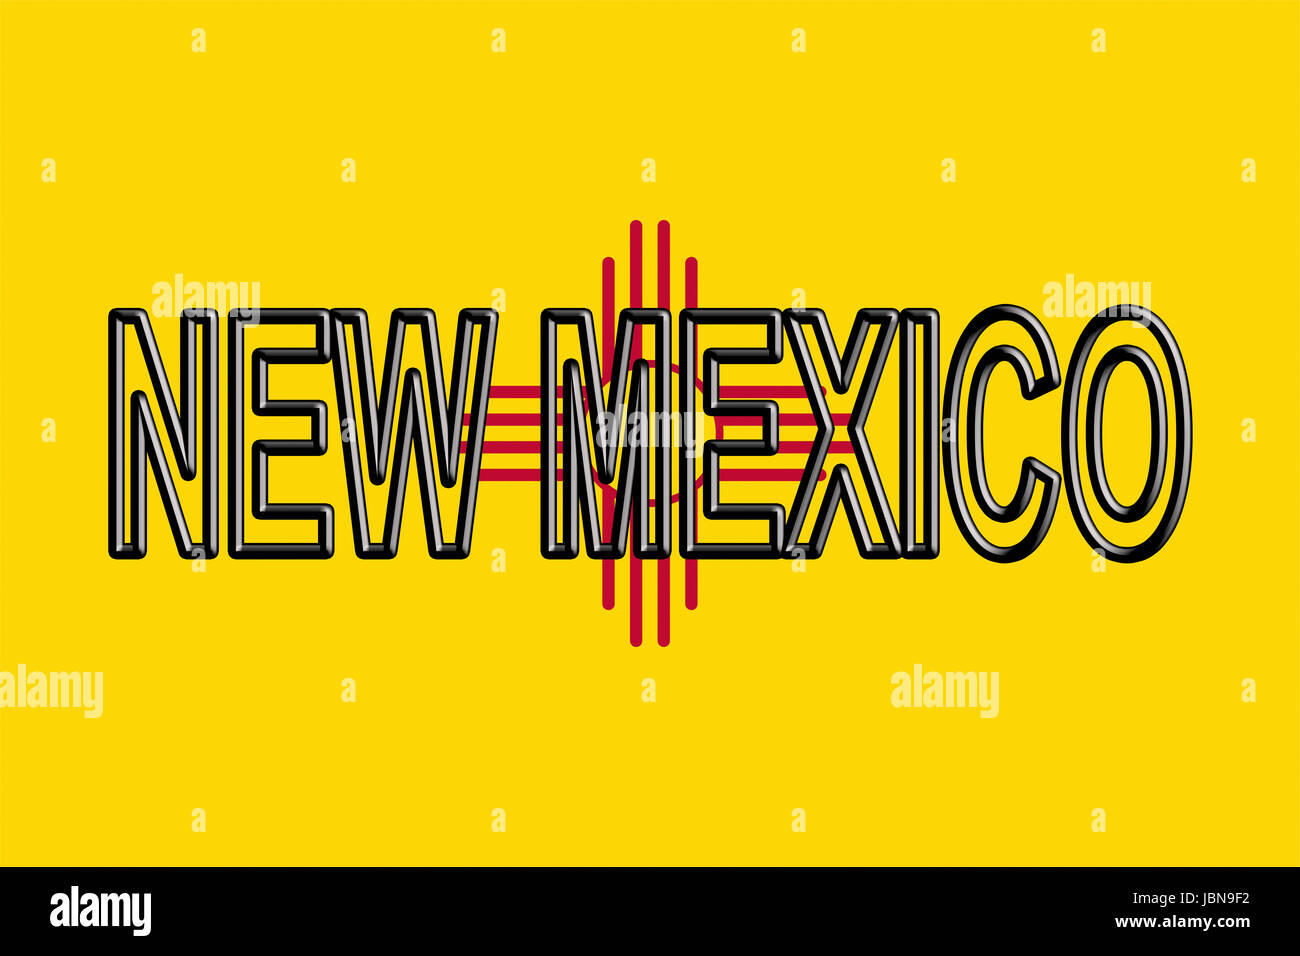 Illustrazione di un flag di stato del New Mexico in America con lo stato scritto sulla bandiera. Foto Stock